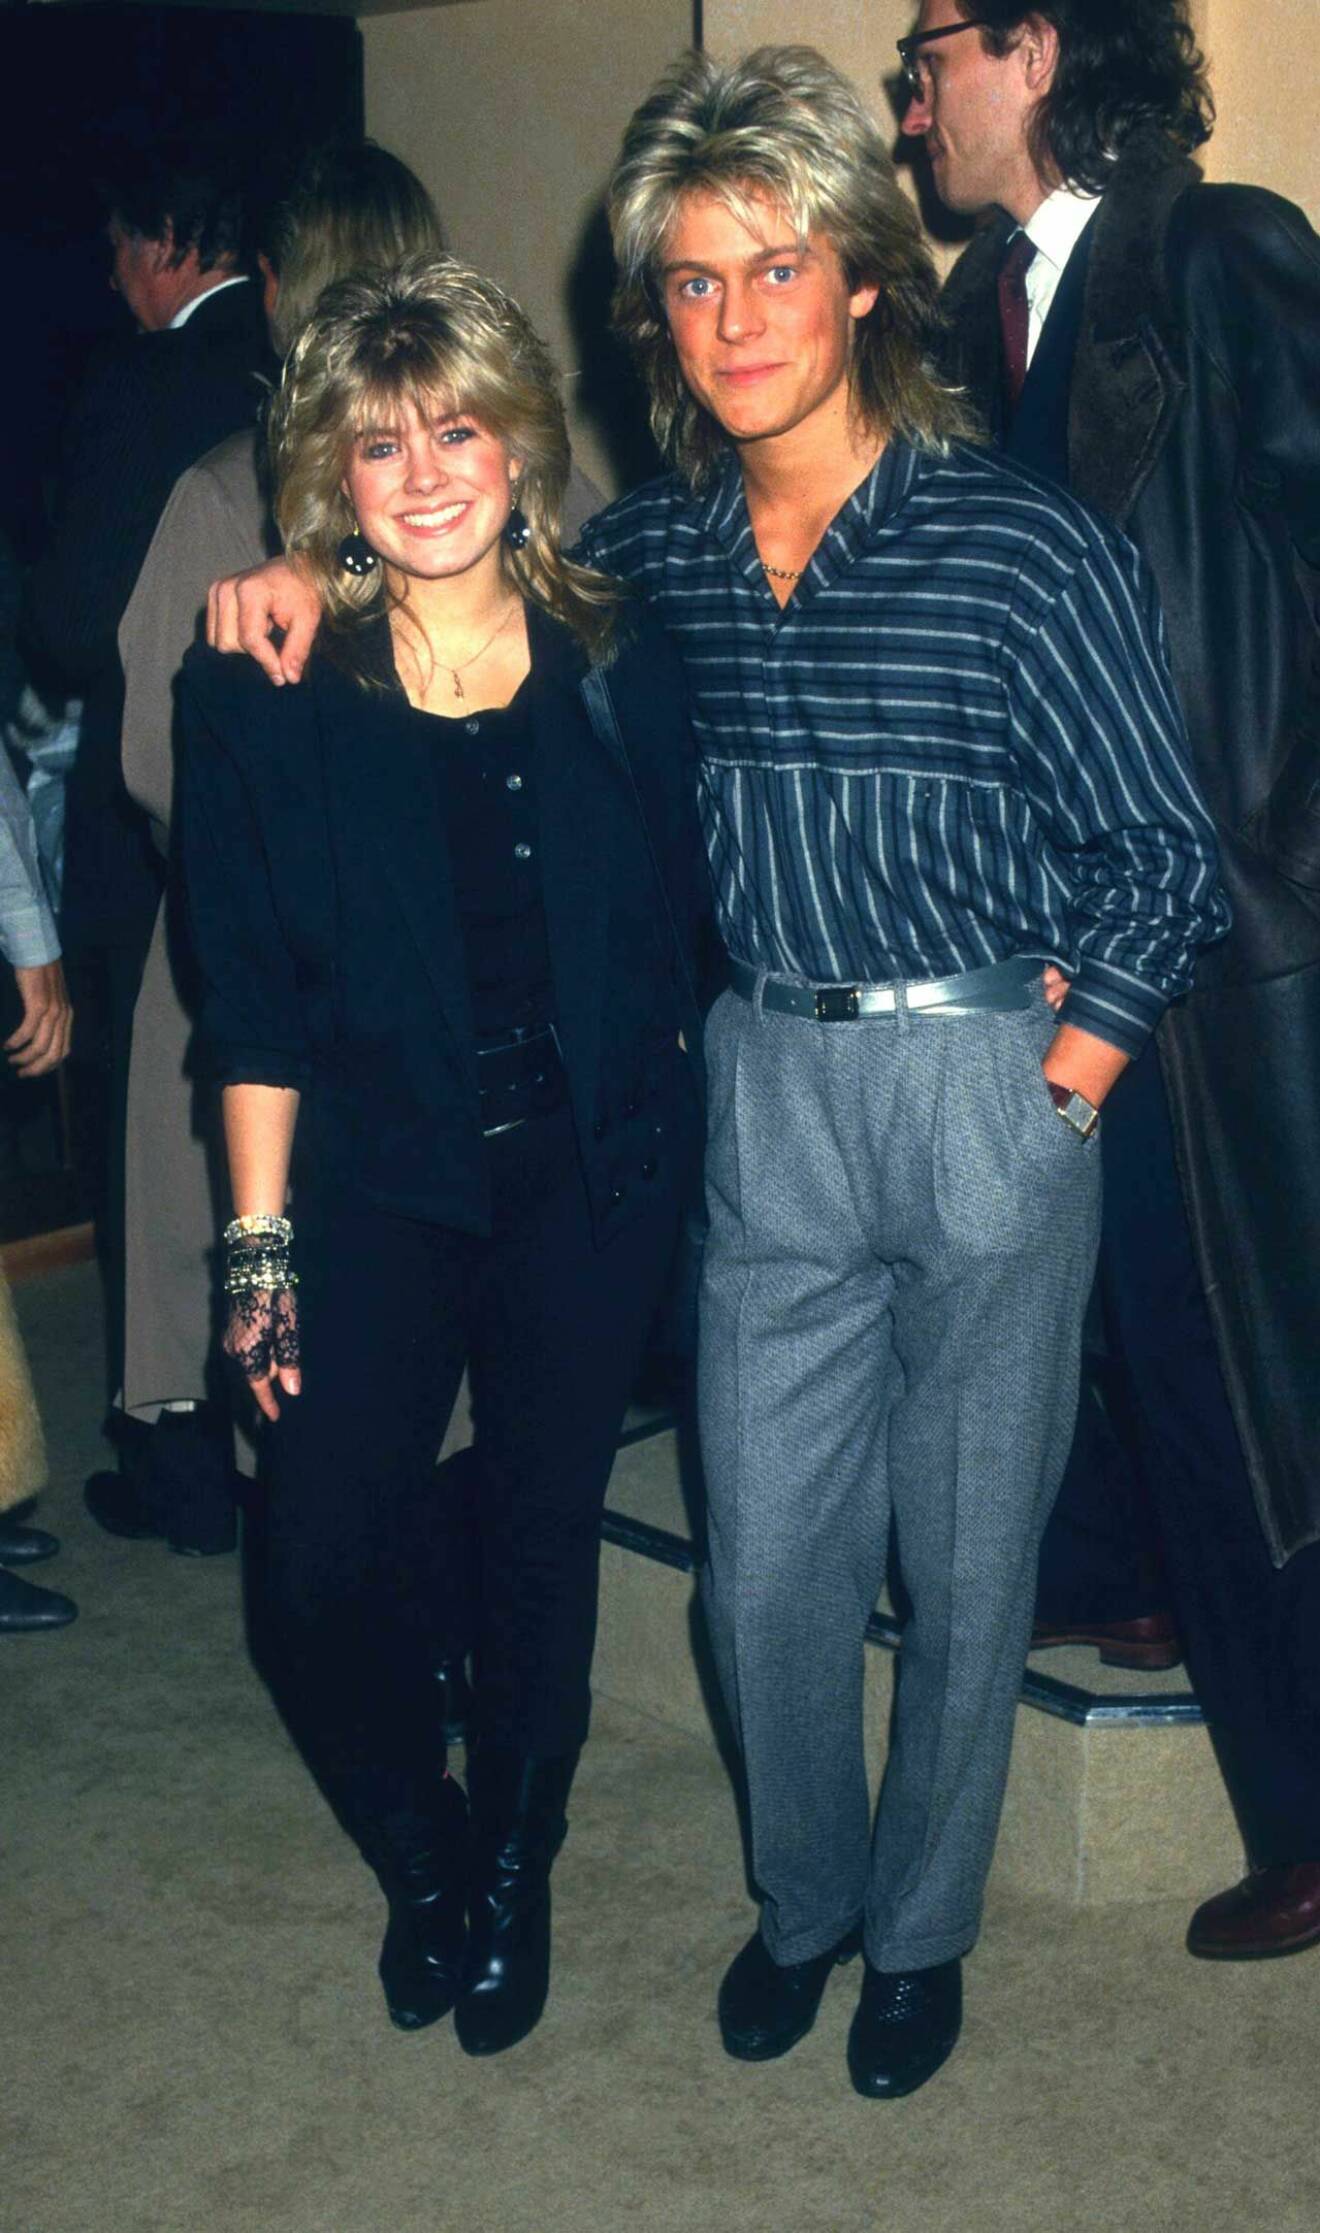 Lika som bär! Pernilla och brorsan Niclas på fest 1989.